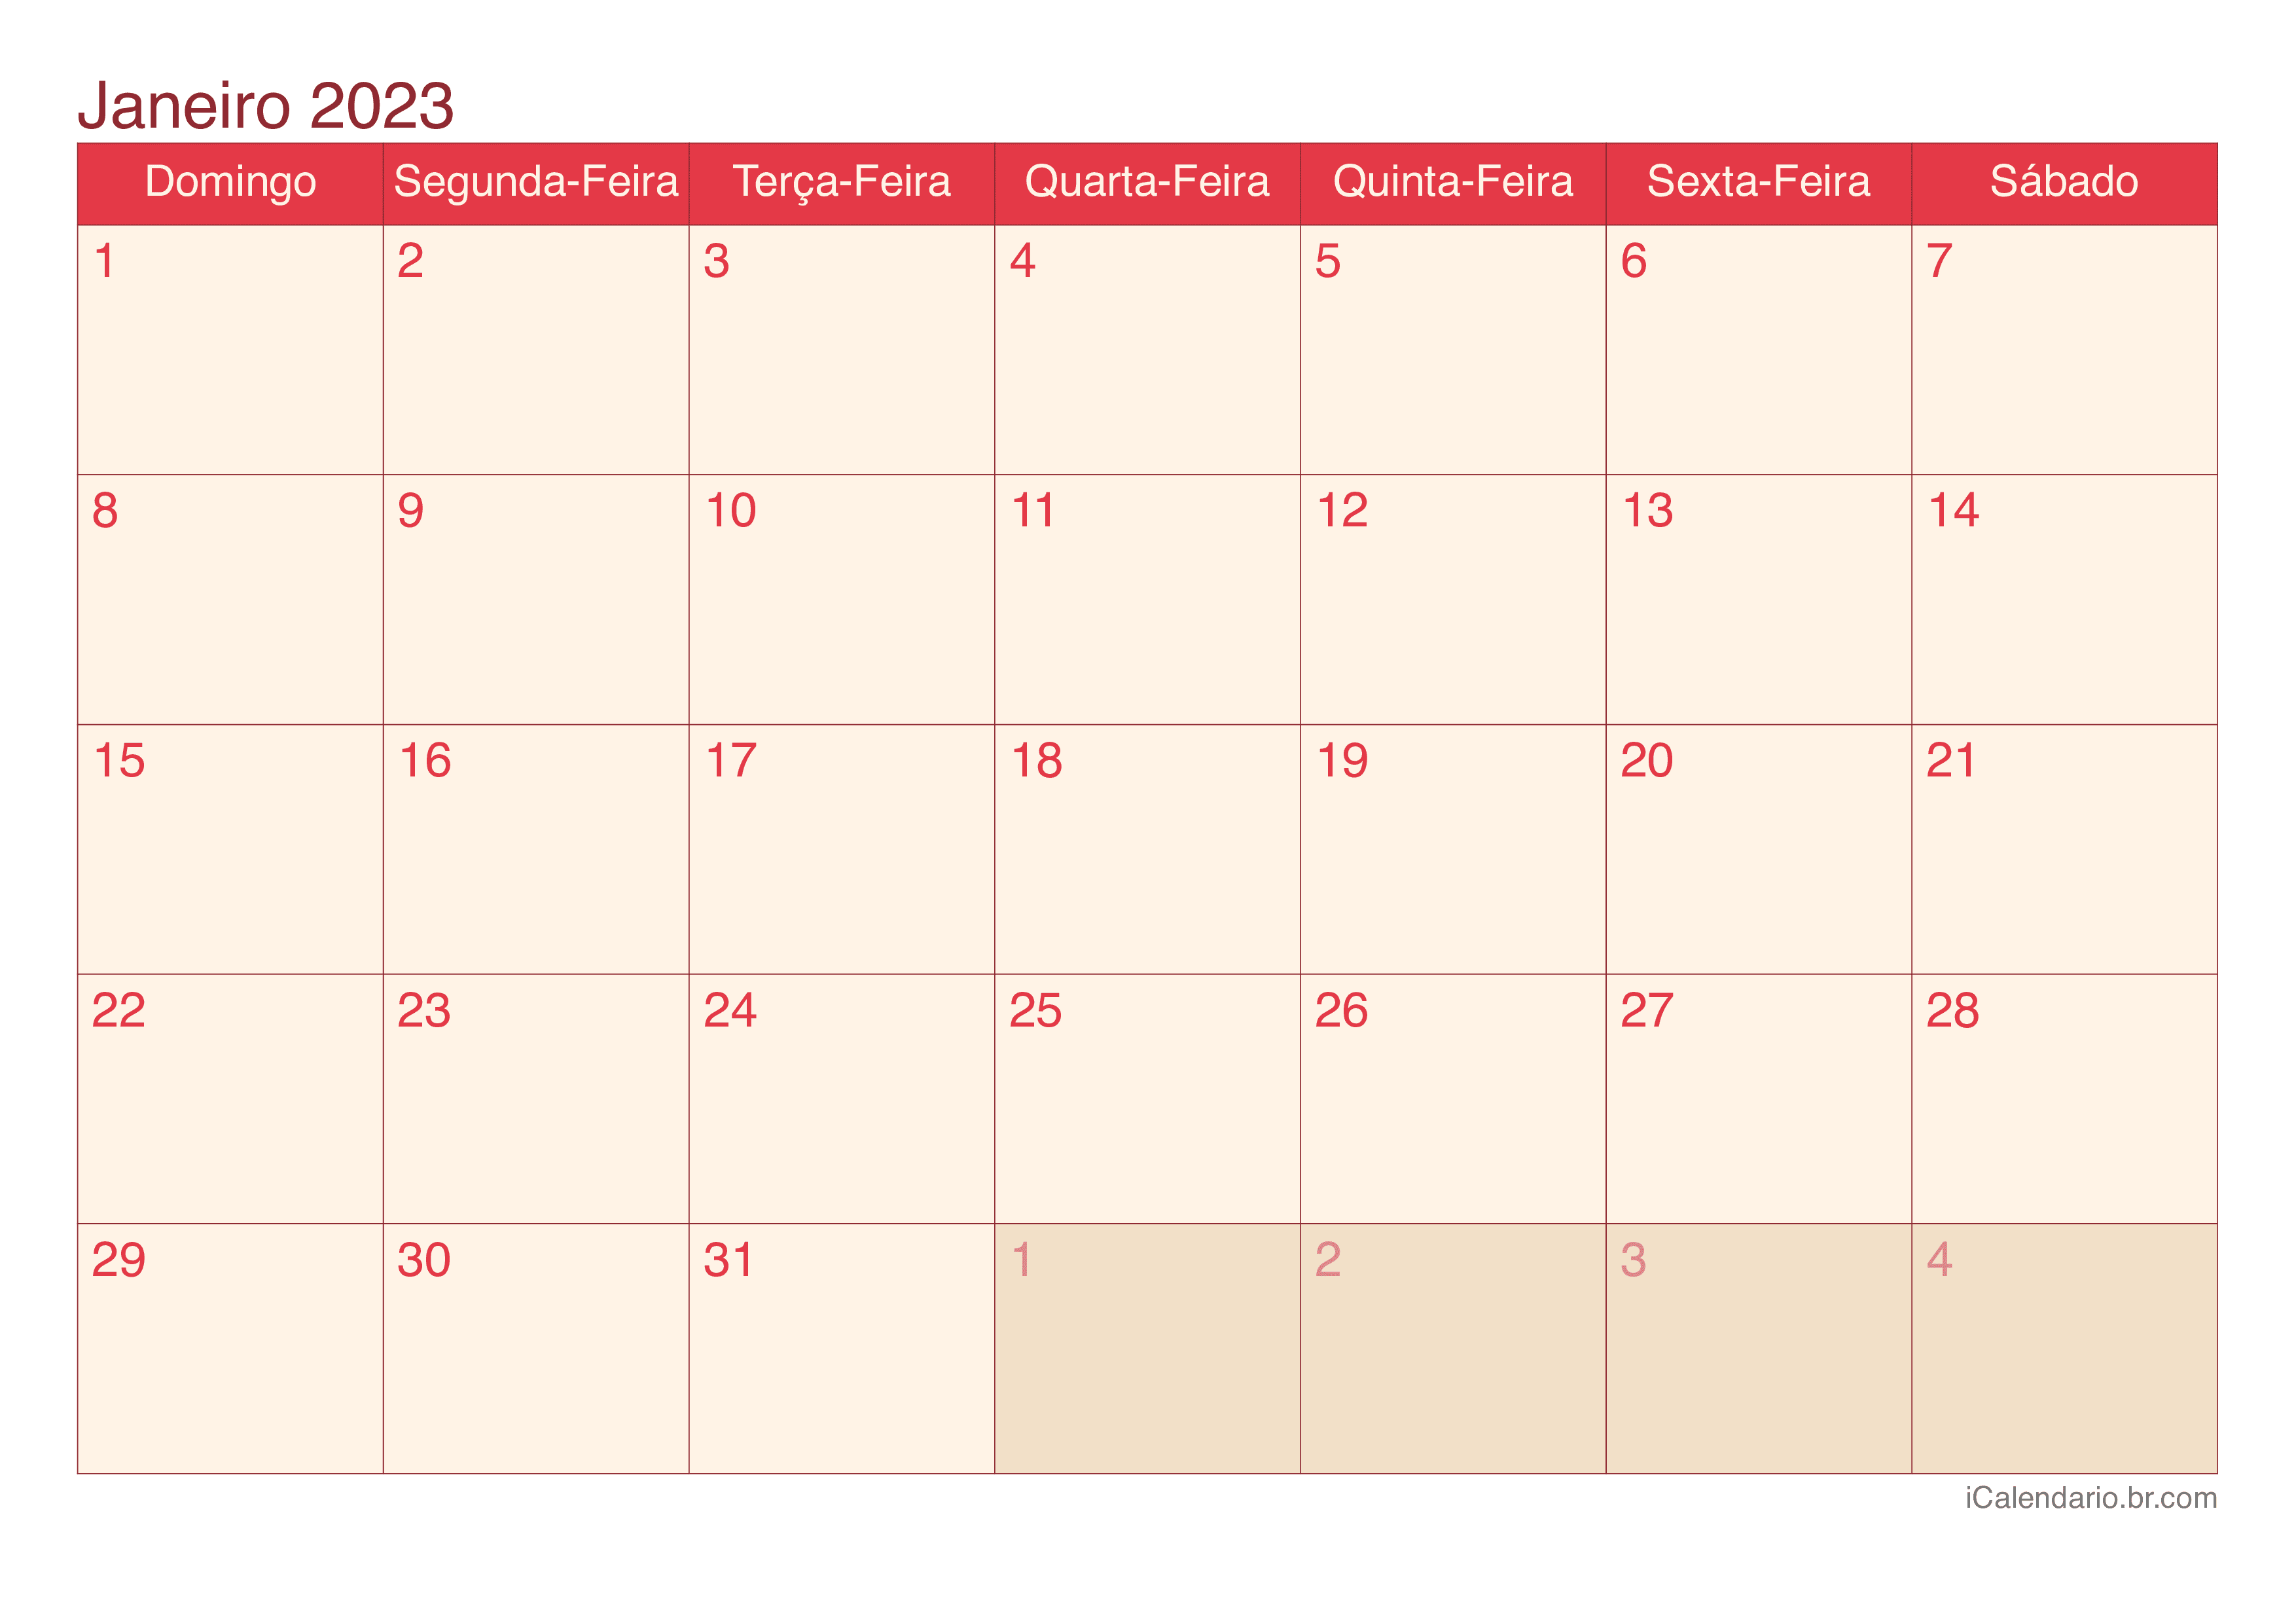 Calendário de janeiro 2023 - Cherry